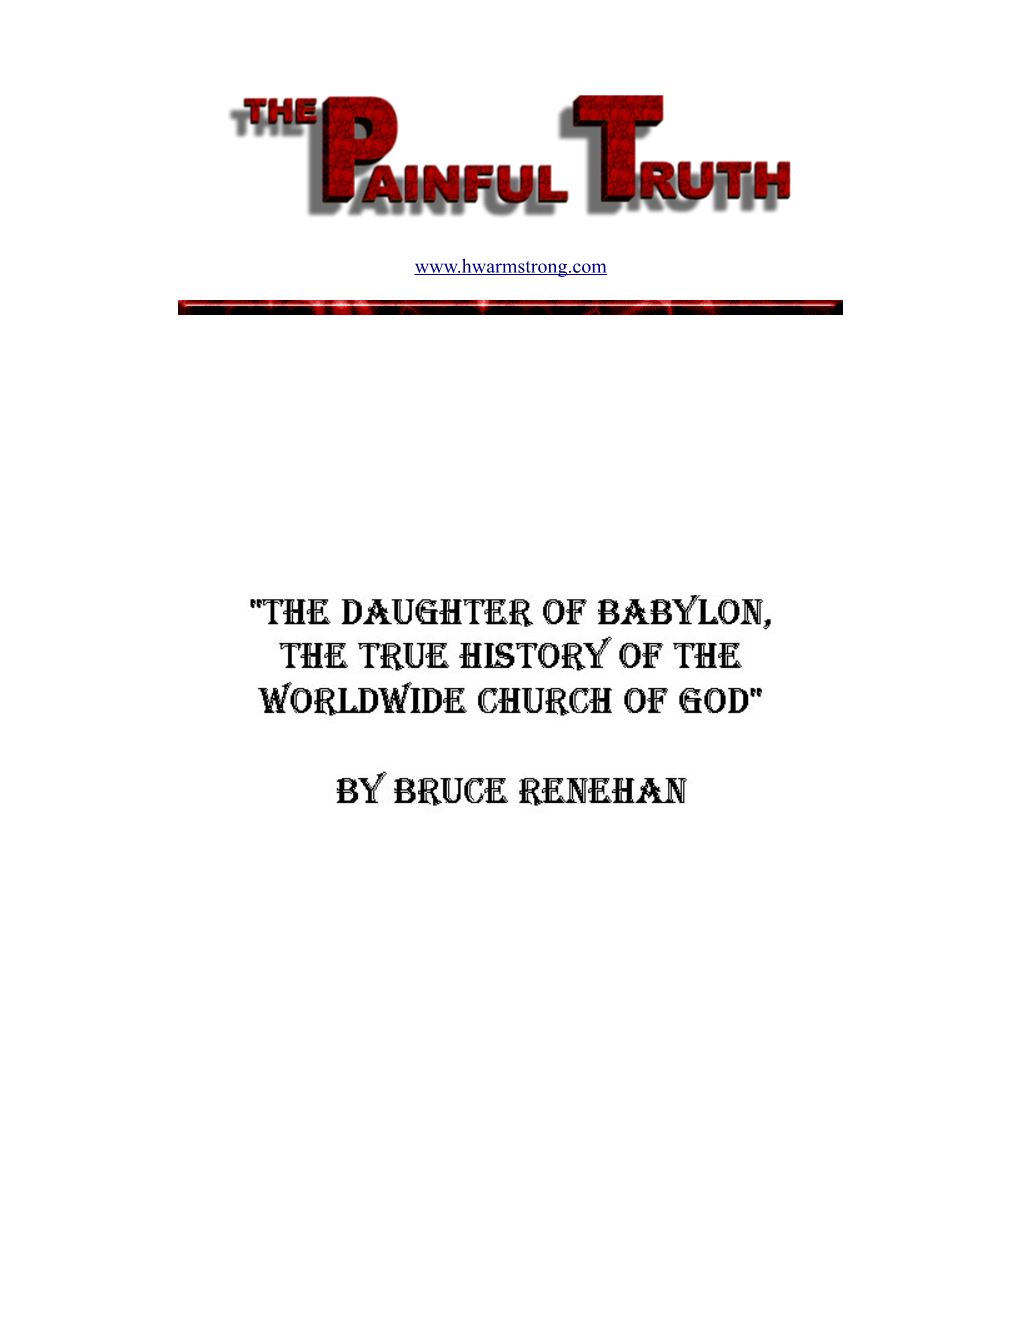 Daughter of Babylon